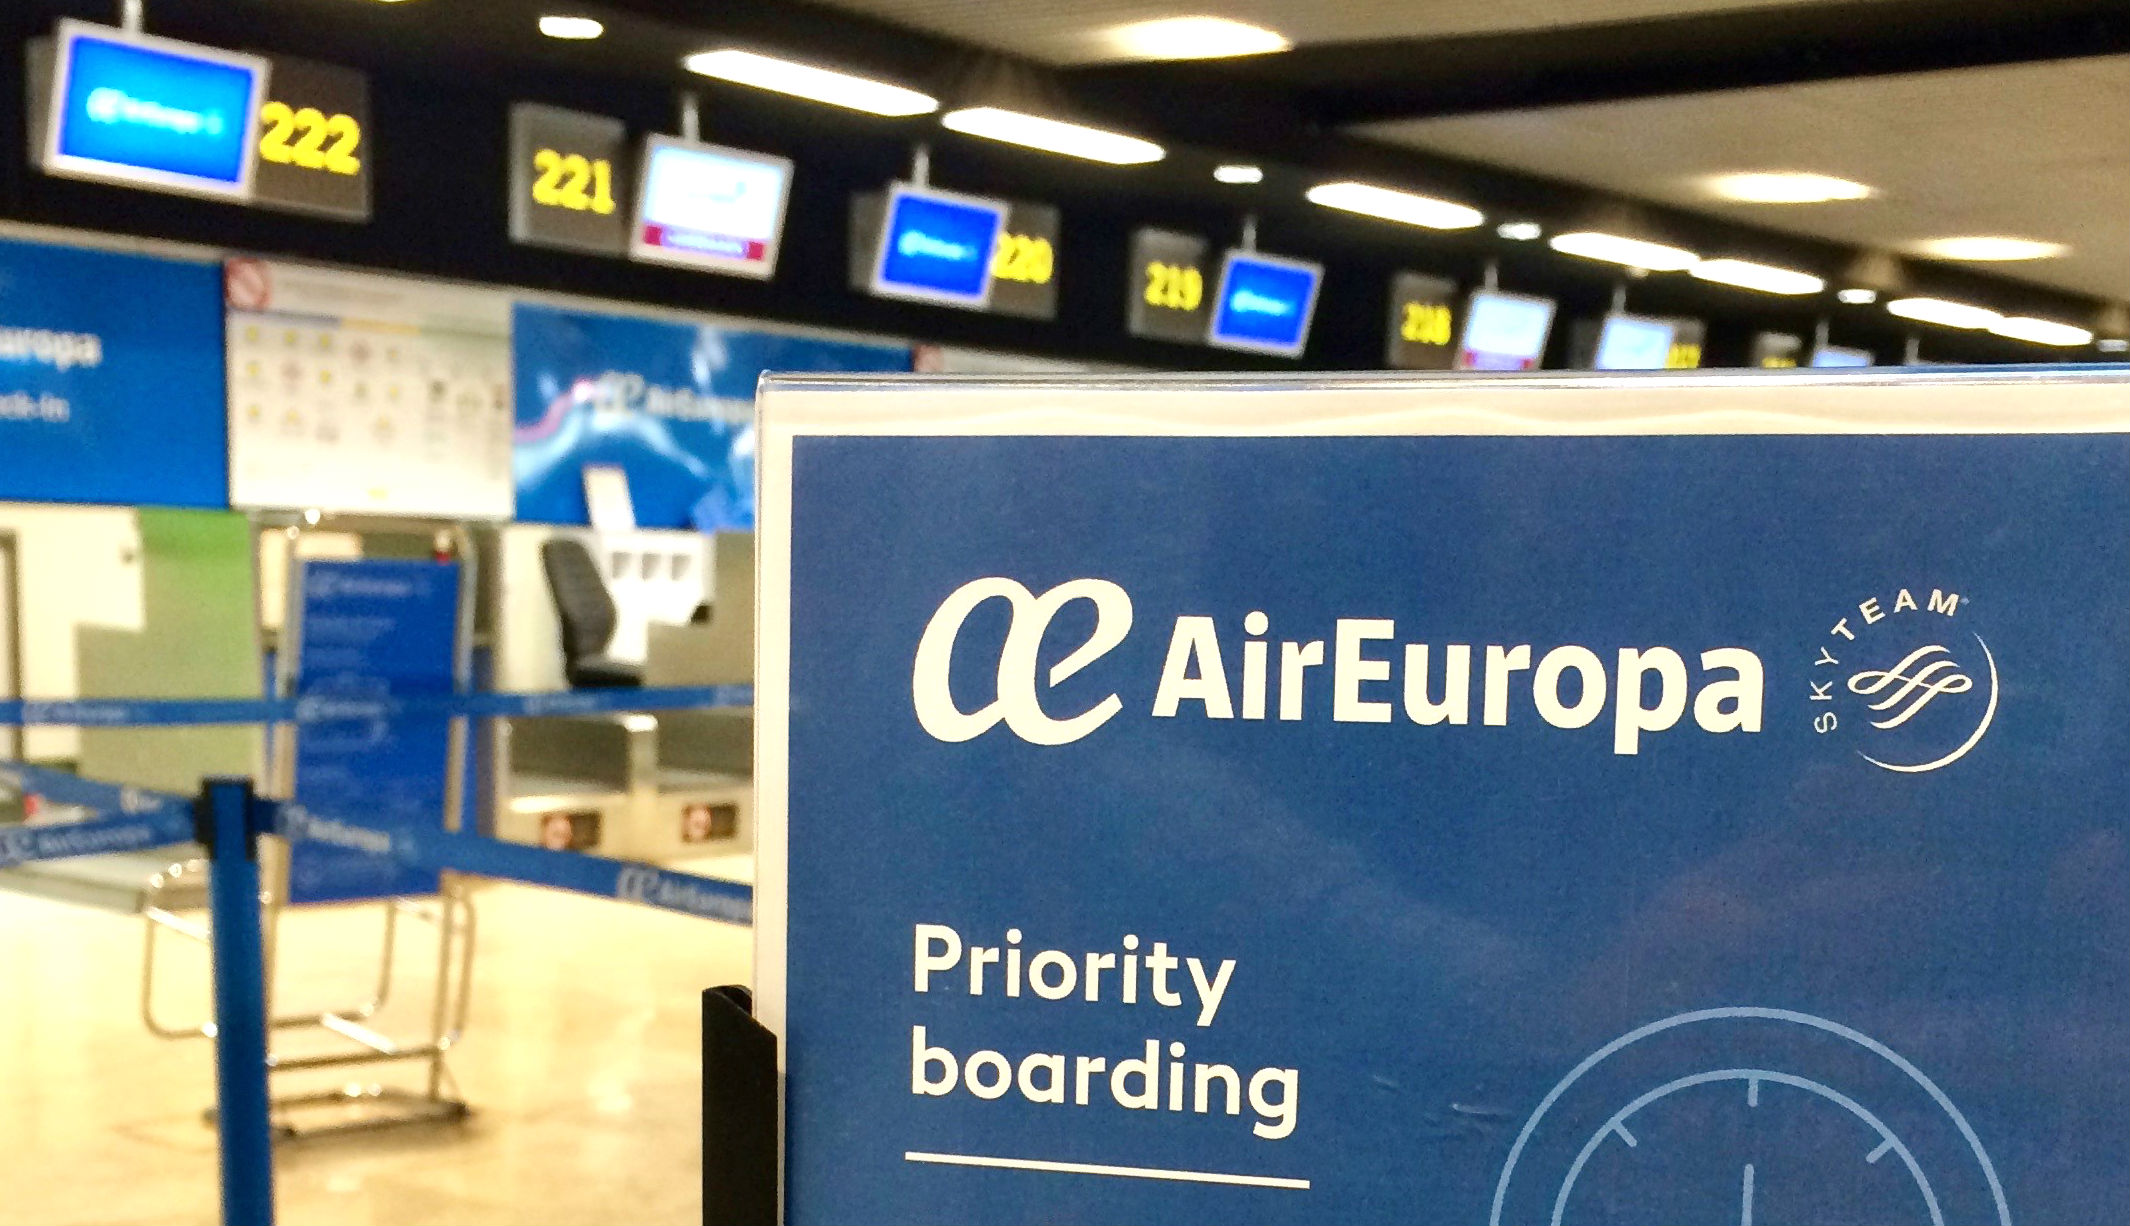 Air Europa activa servicio de embarque prioritarios en todos los aeropuertos nacionales donde opera